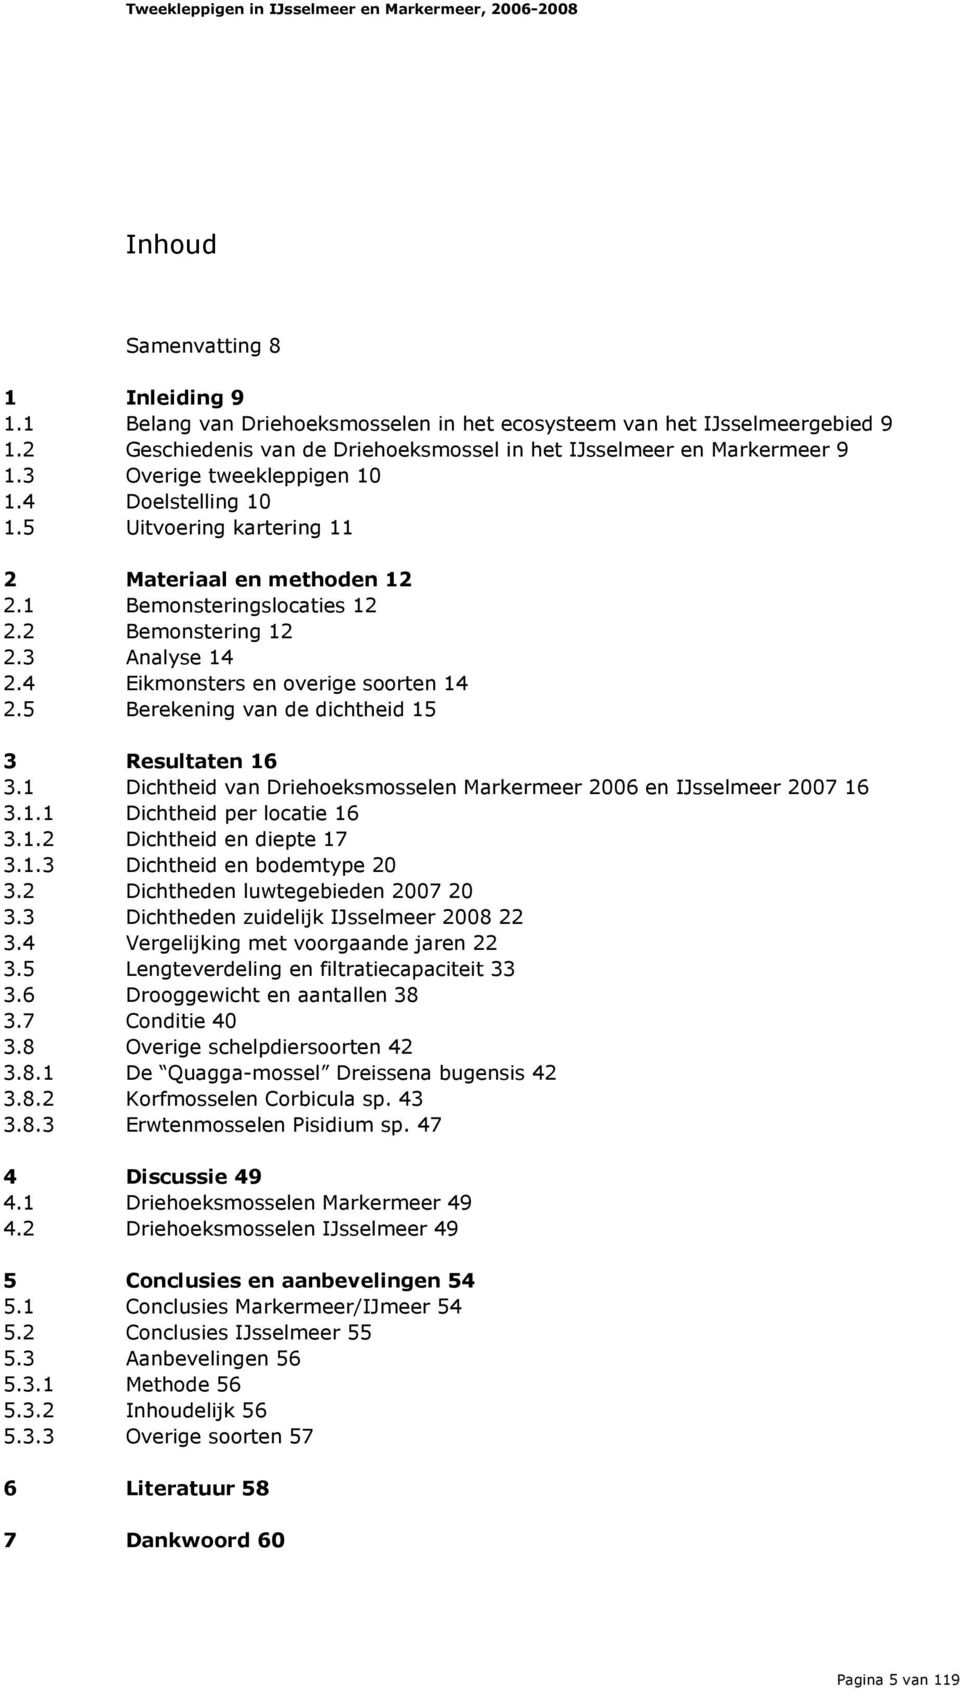 4 Eikmonsters en overige soorten 14 2.5 Berekening van de dichtheid 15 3 Resultaten 16 3.1 Dichtheid van Driehoeksmosselen Markermeer 2006 en IJsselmeer 2007 16 3.1.1 Dichtheid per locatie 16 3.1.2 Dichtheid en diepte 17 3.